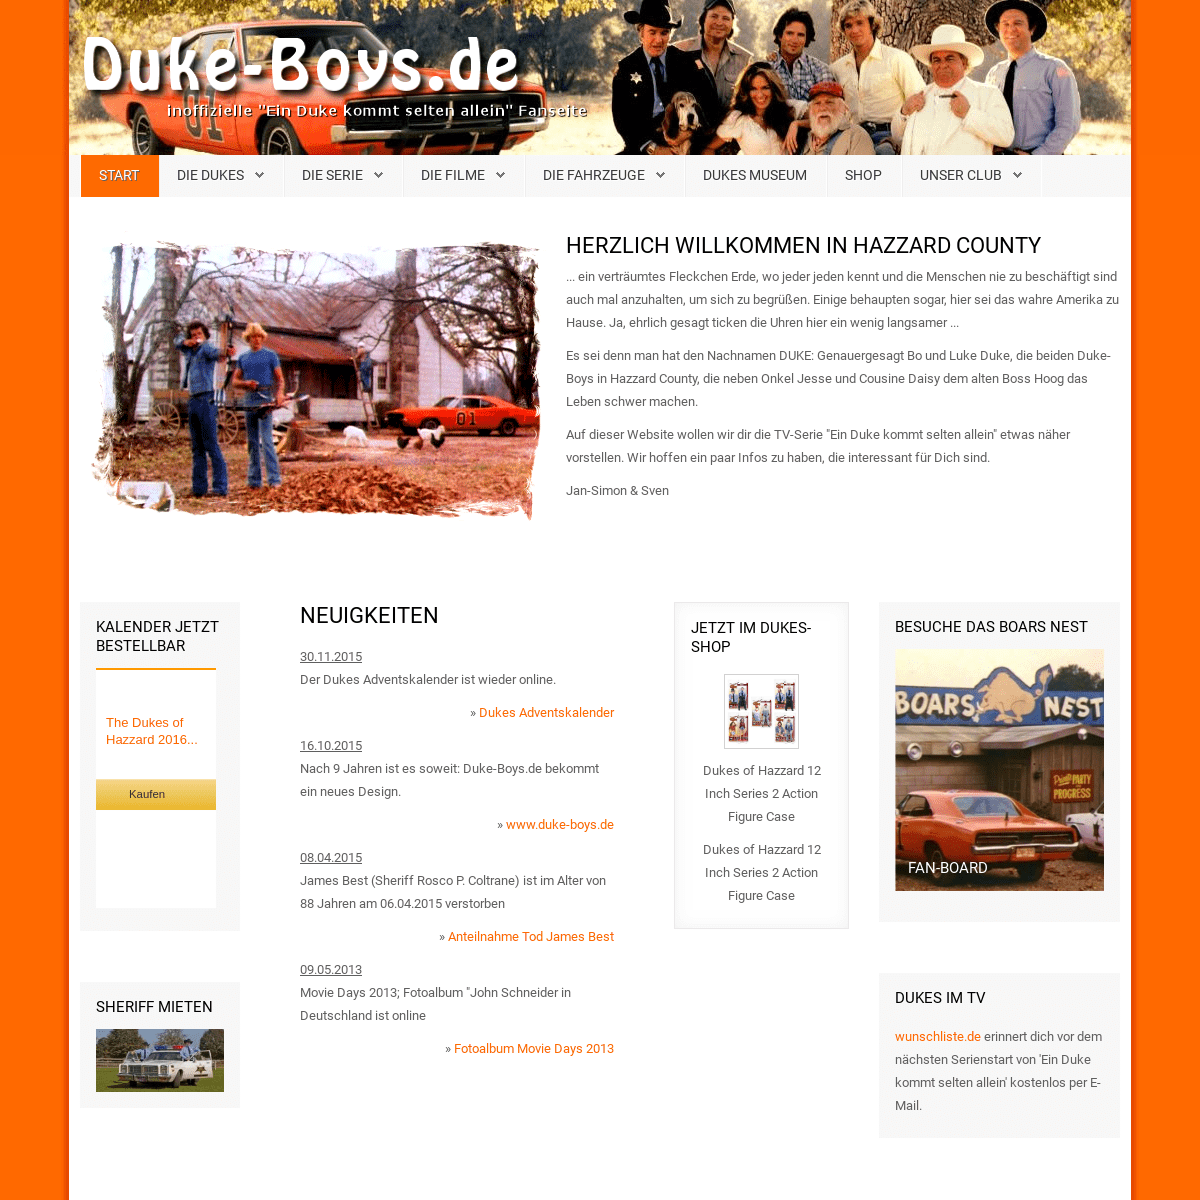 A complete backup of duke-boys.de